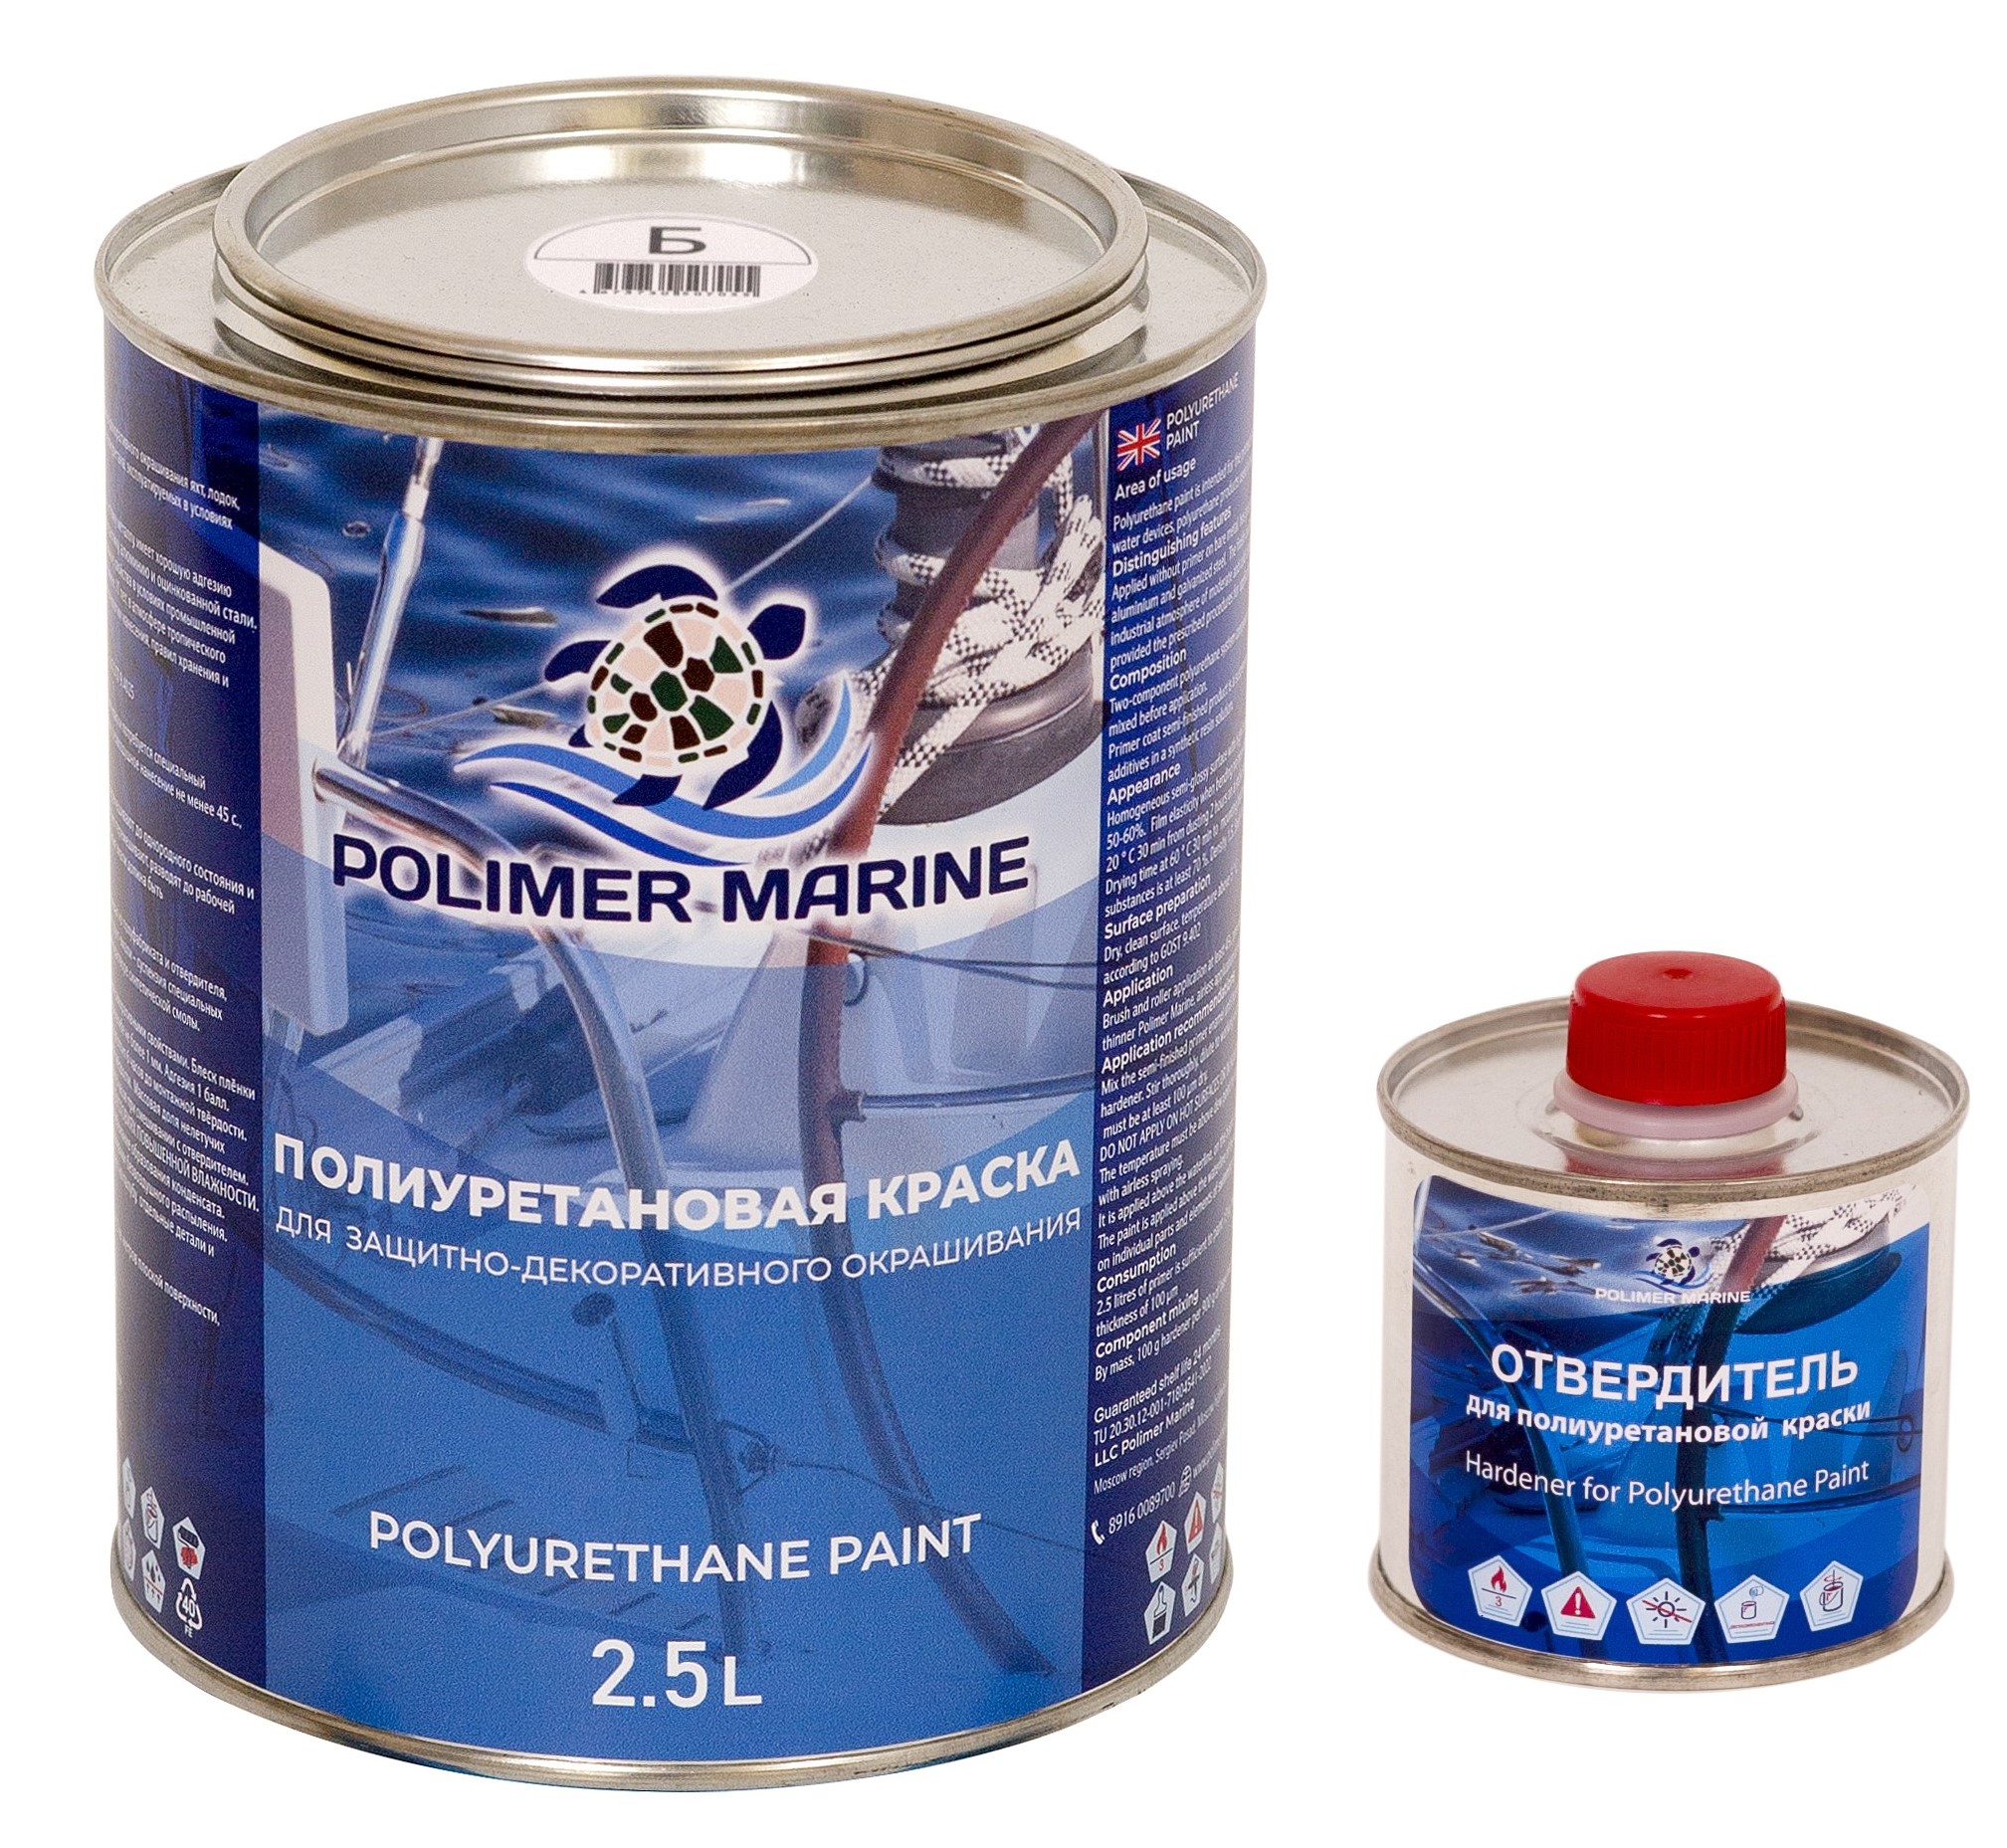 Полиуретановая краска Polimer Marine КП Кп25б белая 2.5 л двухкомпонентная 2К полиуретановая краска желтая 2 5 л polimer marine двухкомпонентная 2к